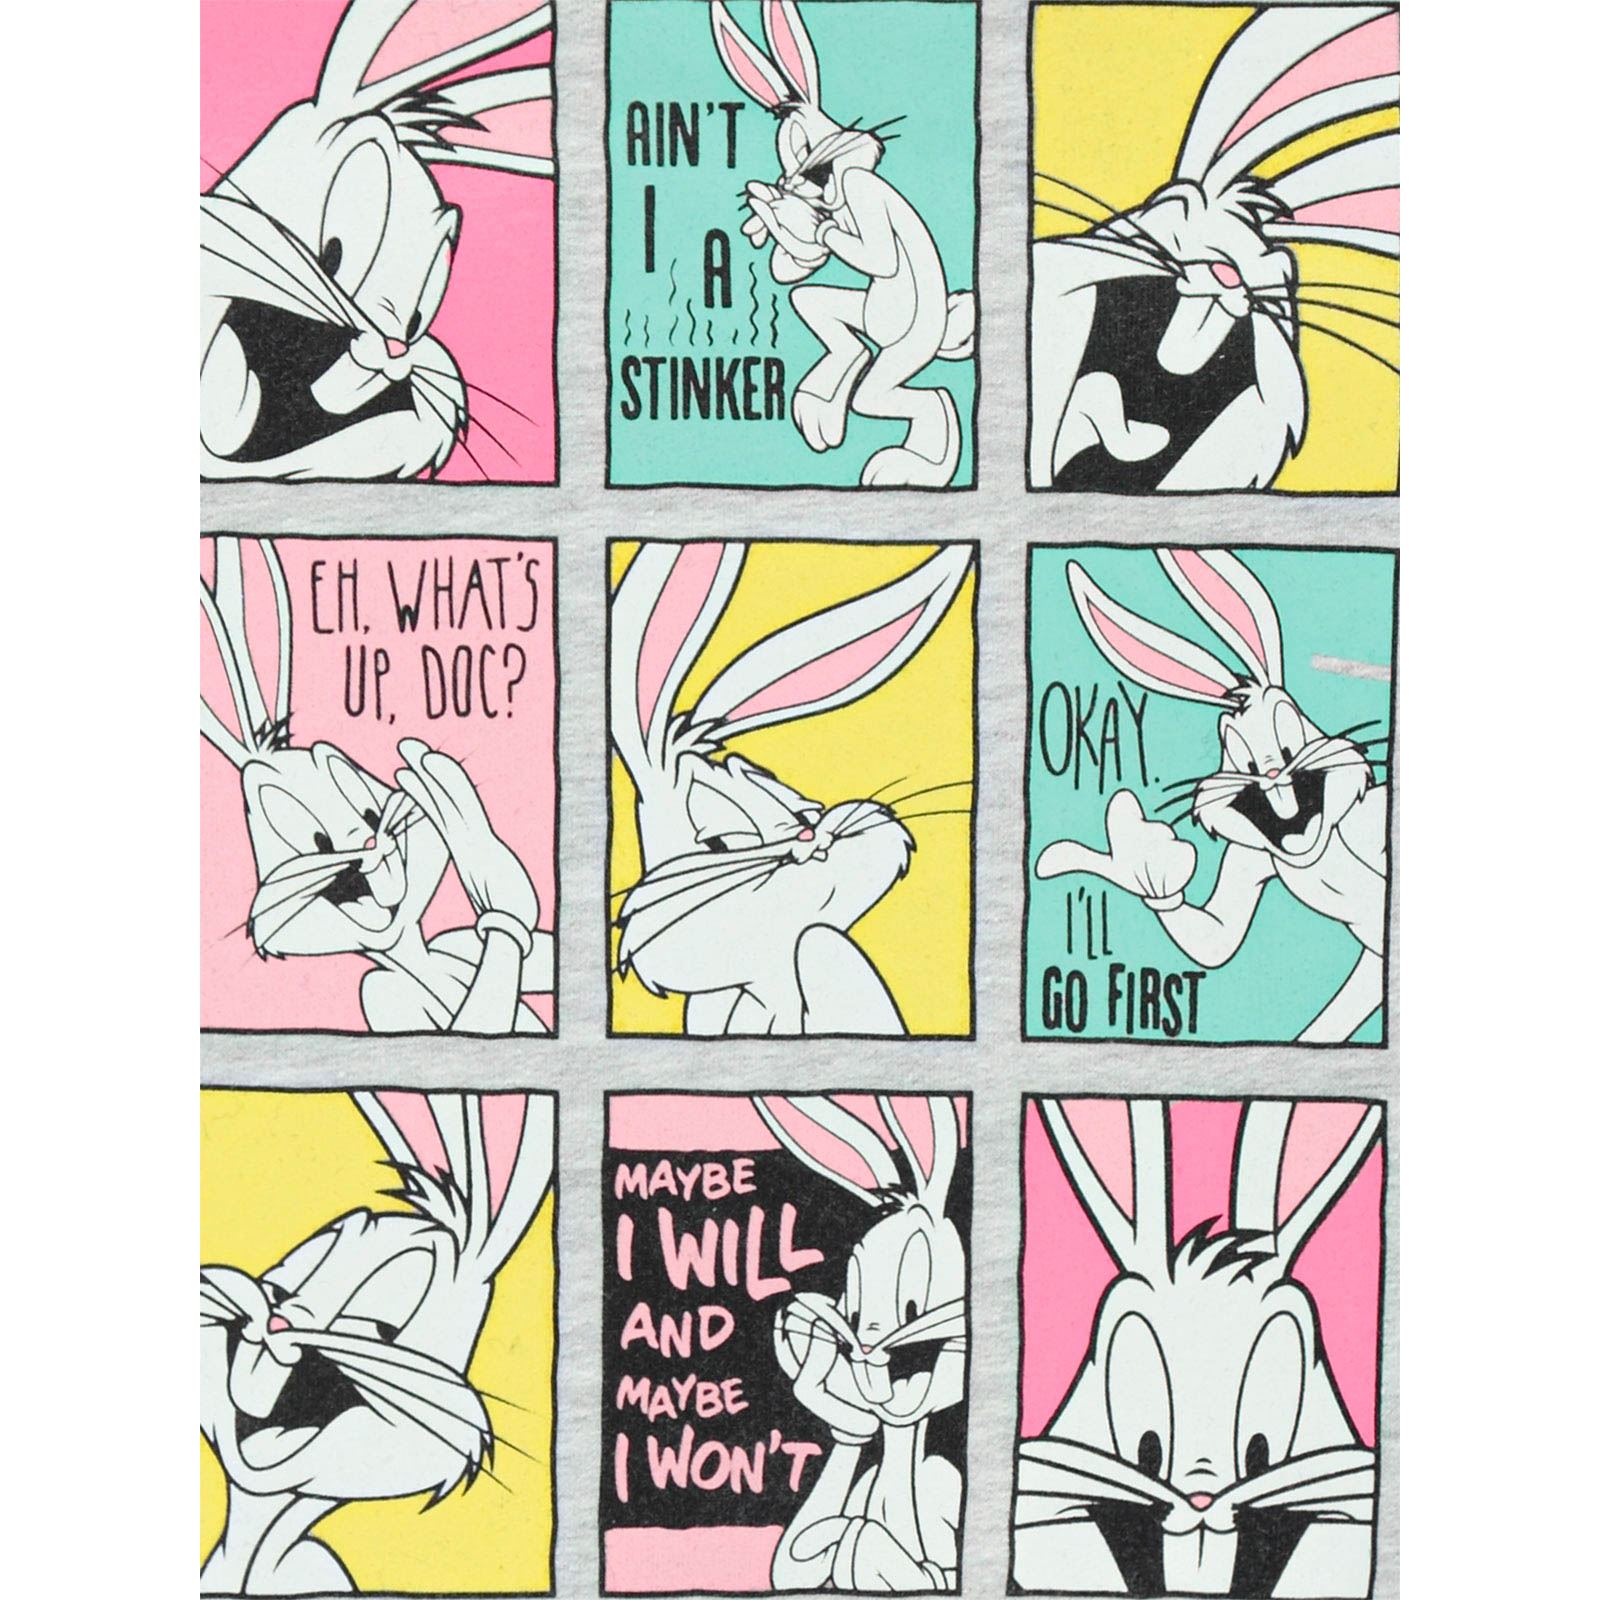 Bugs Bunny Kız Çocuk Sweatshirt 2-5 Yaş Gri